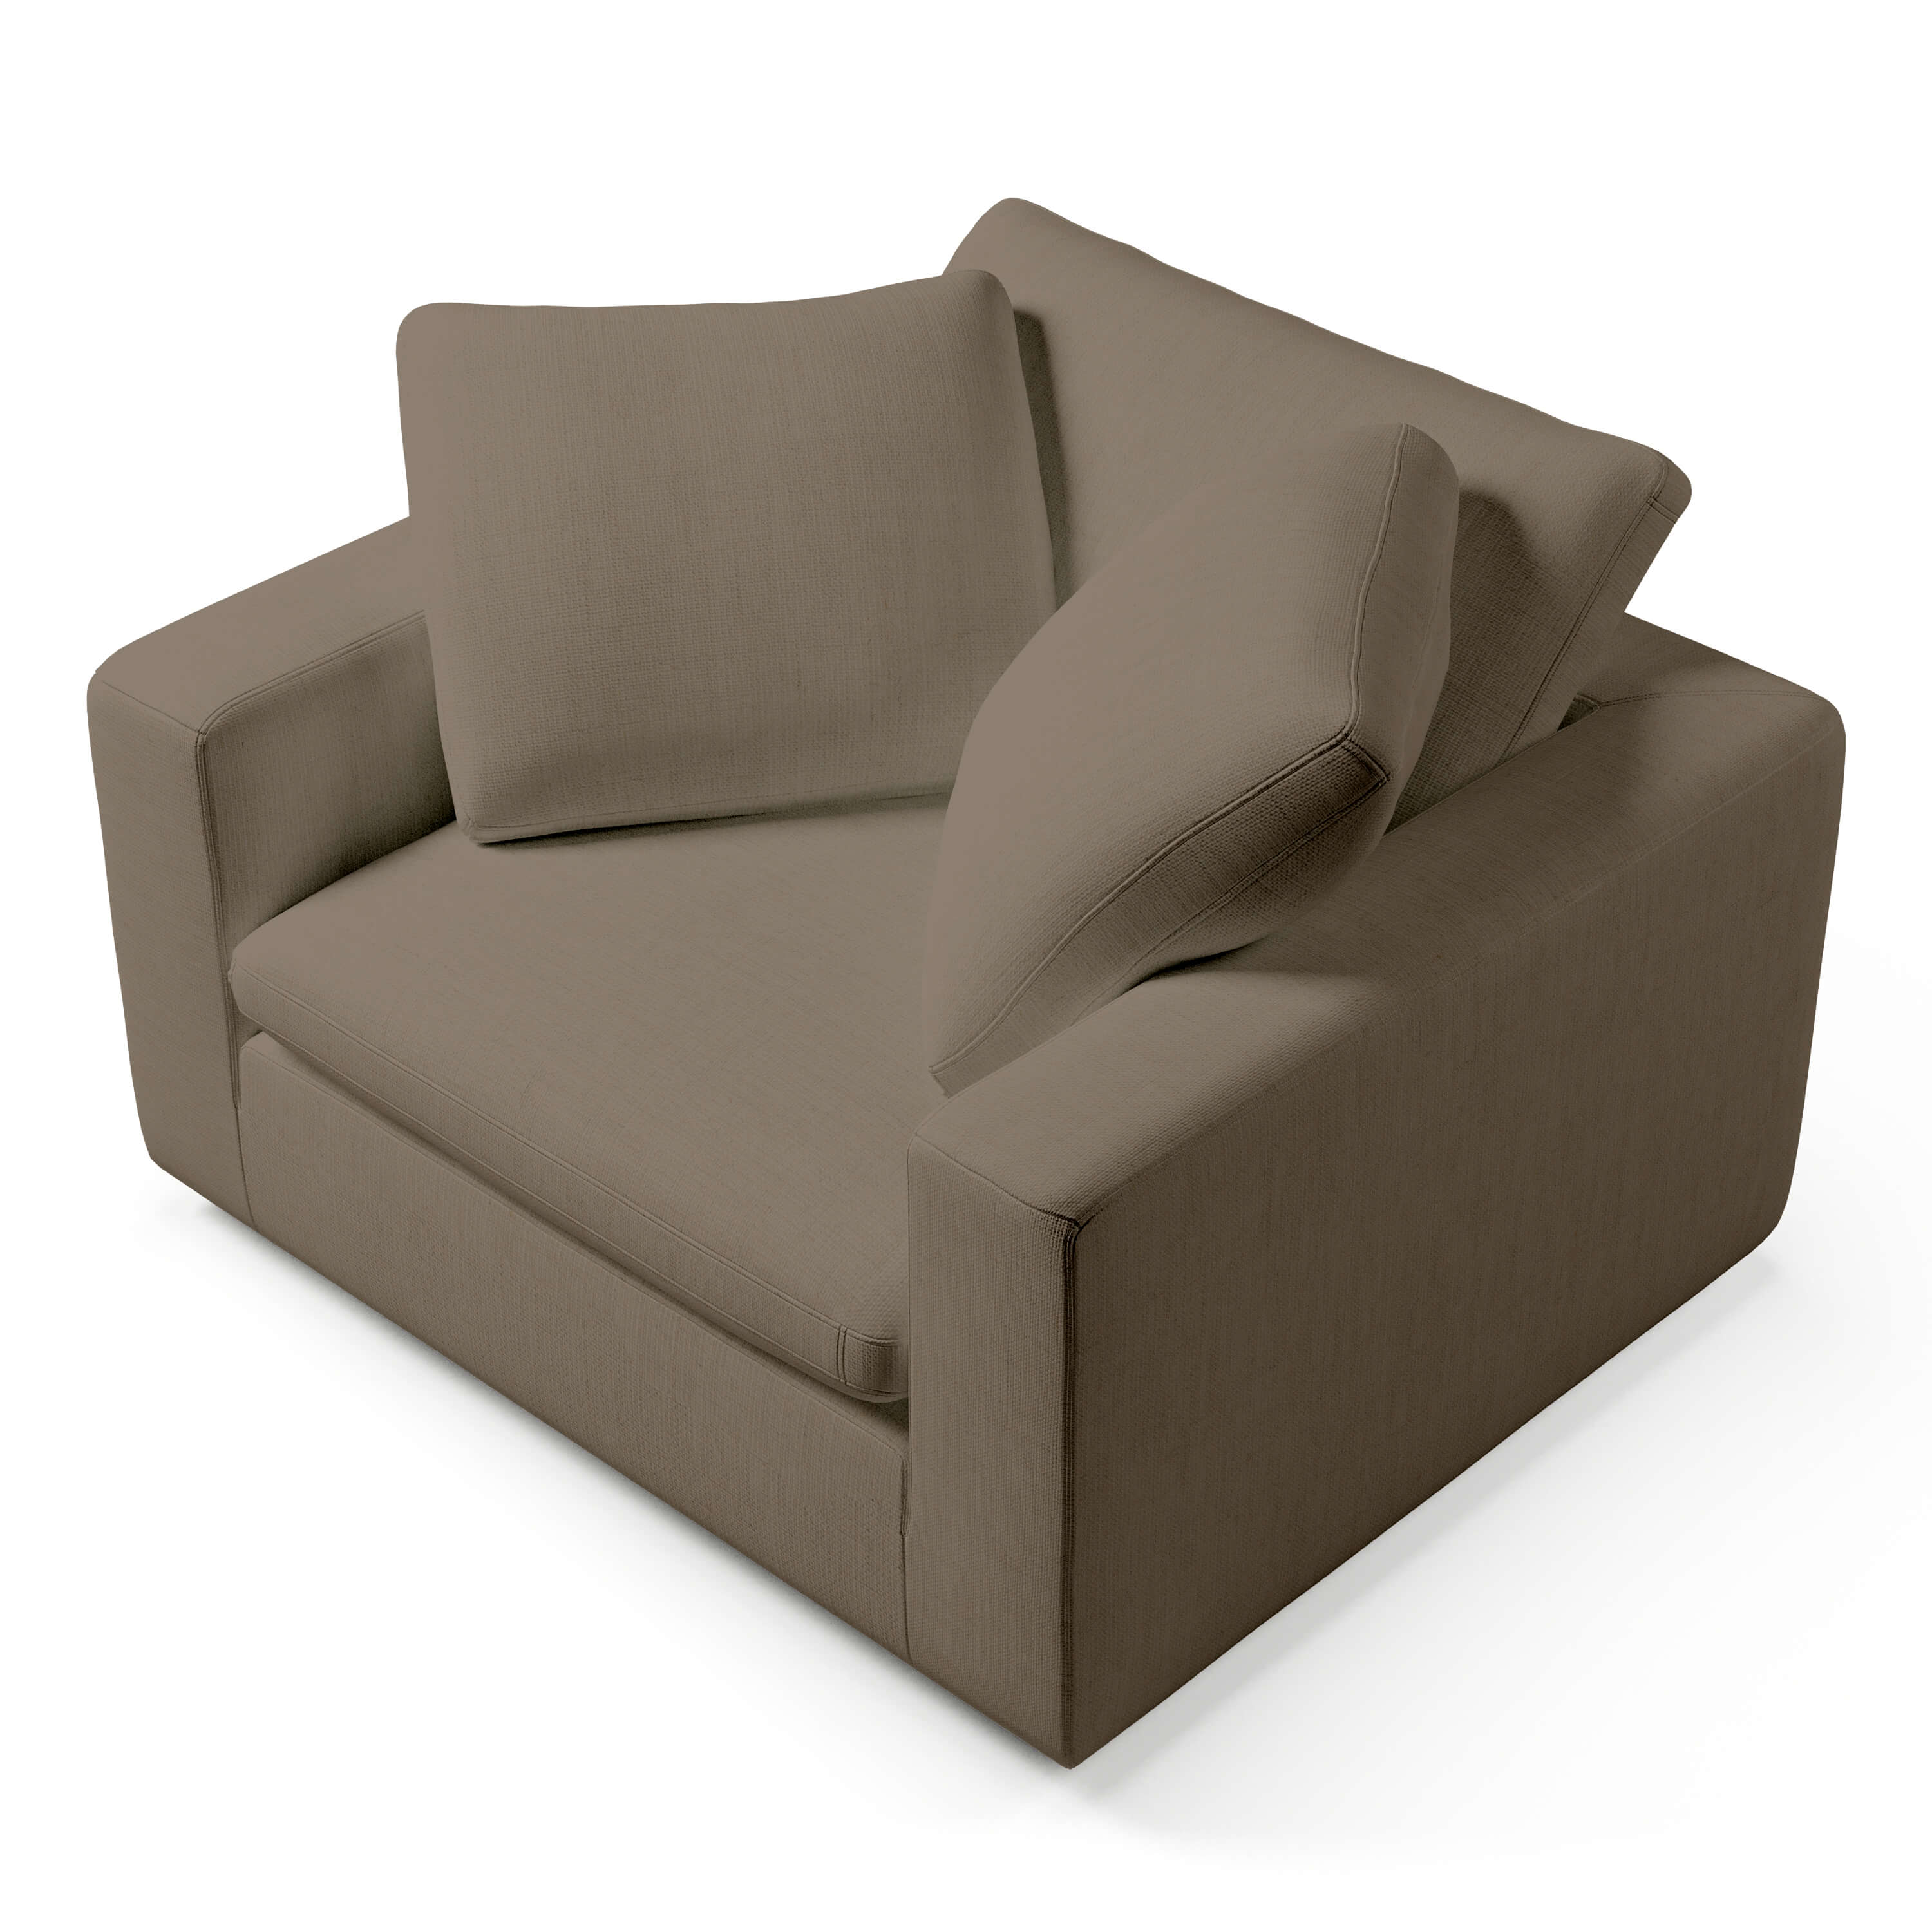 Comfy Armchair